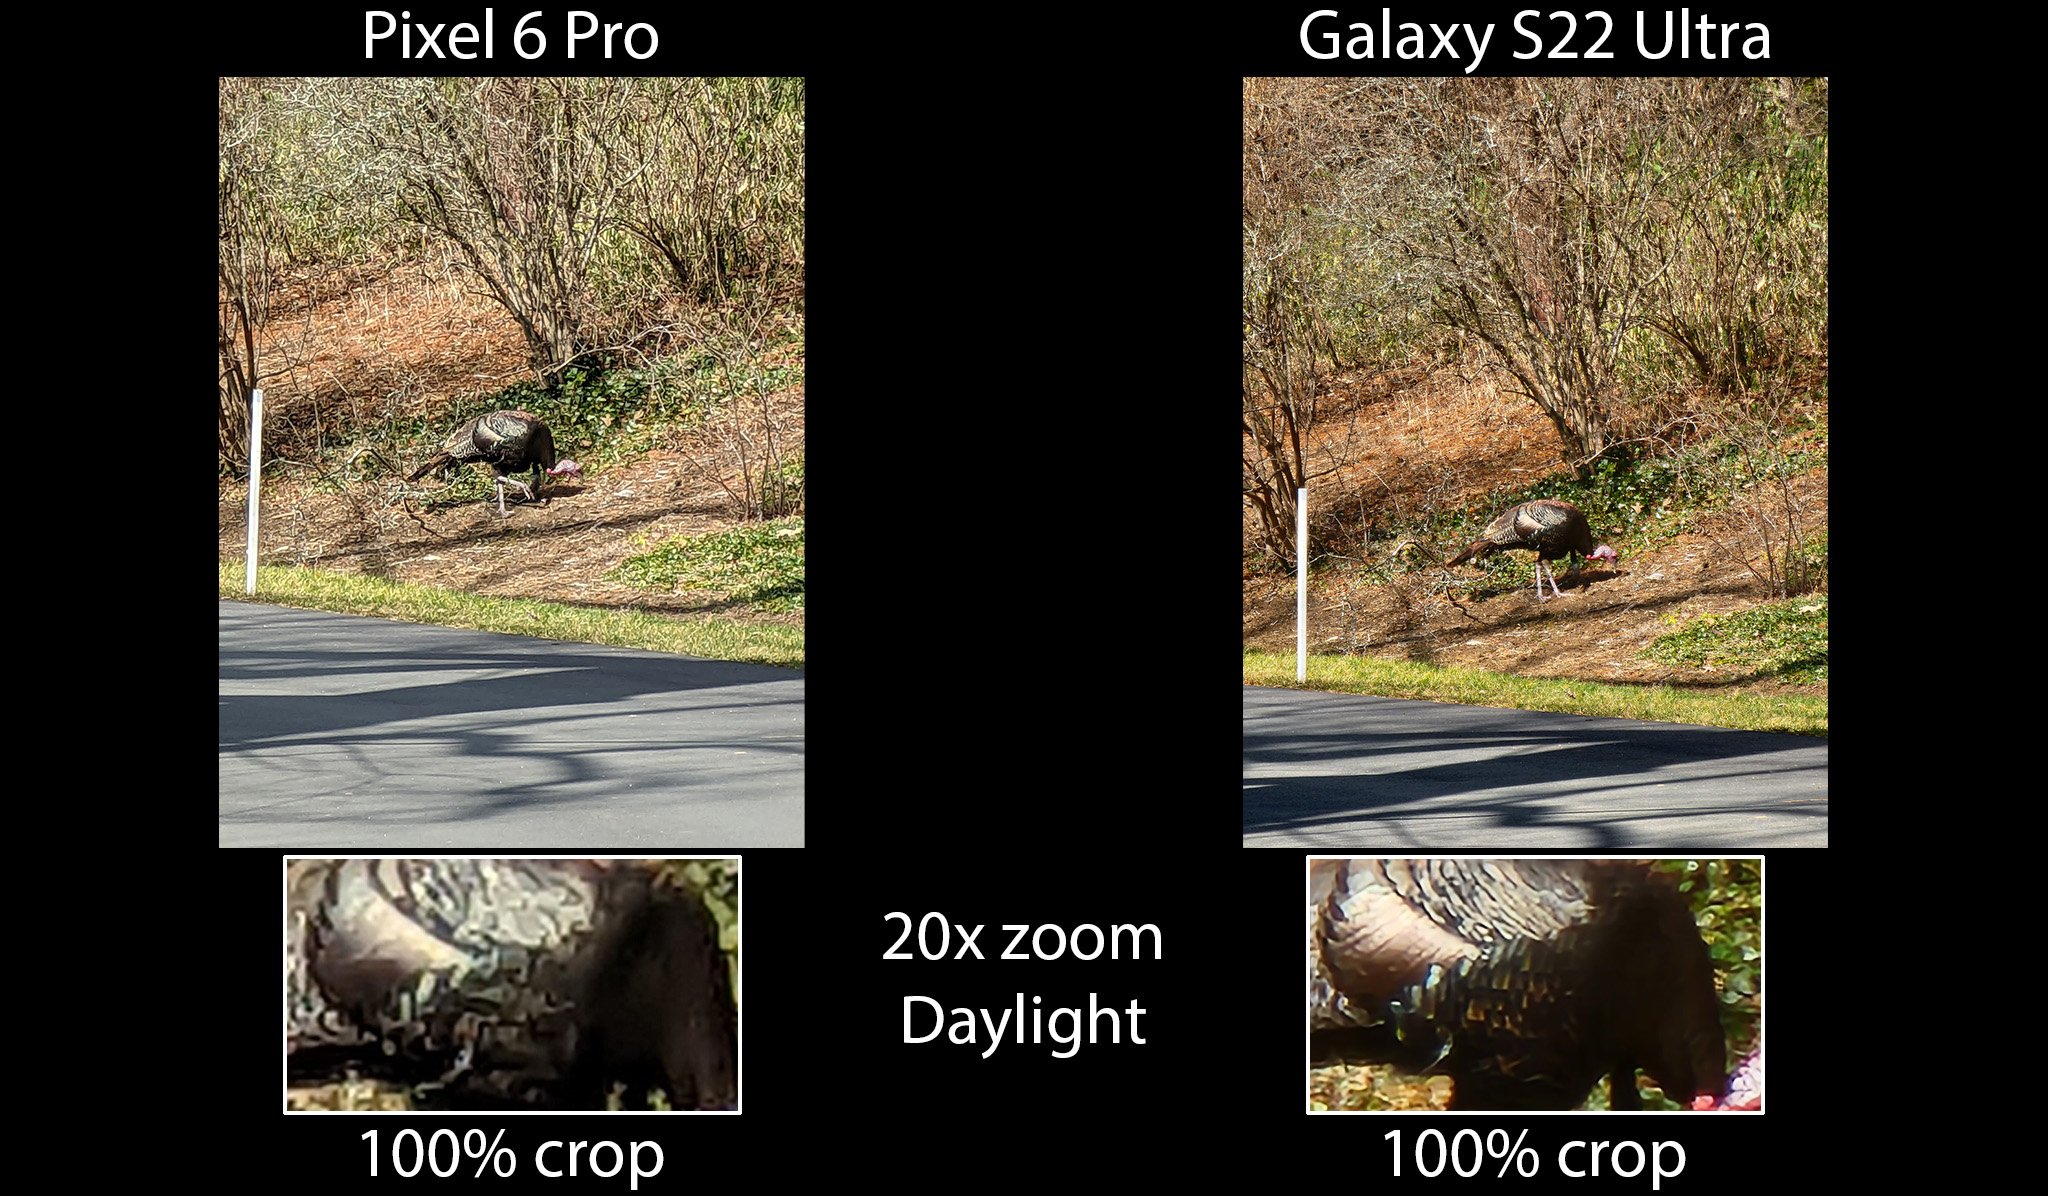 Galaxy S22 Ultra Vs Pixel 6 Pro 20x Tele